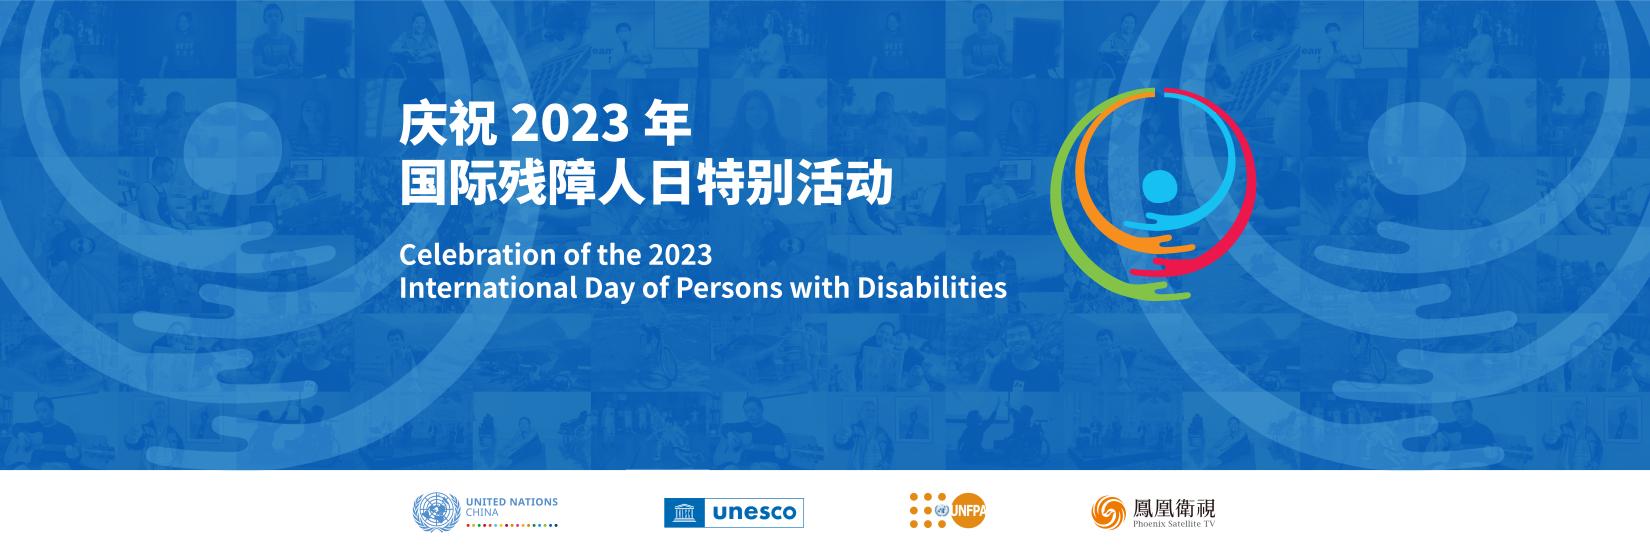 庆祝2023国际残障人日特别活动